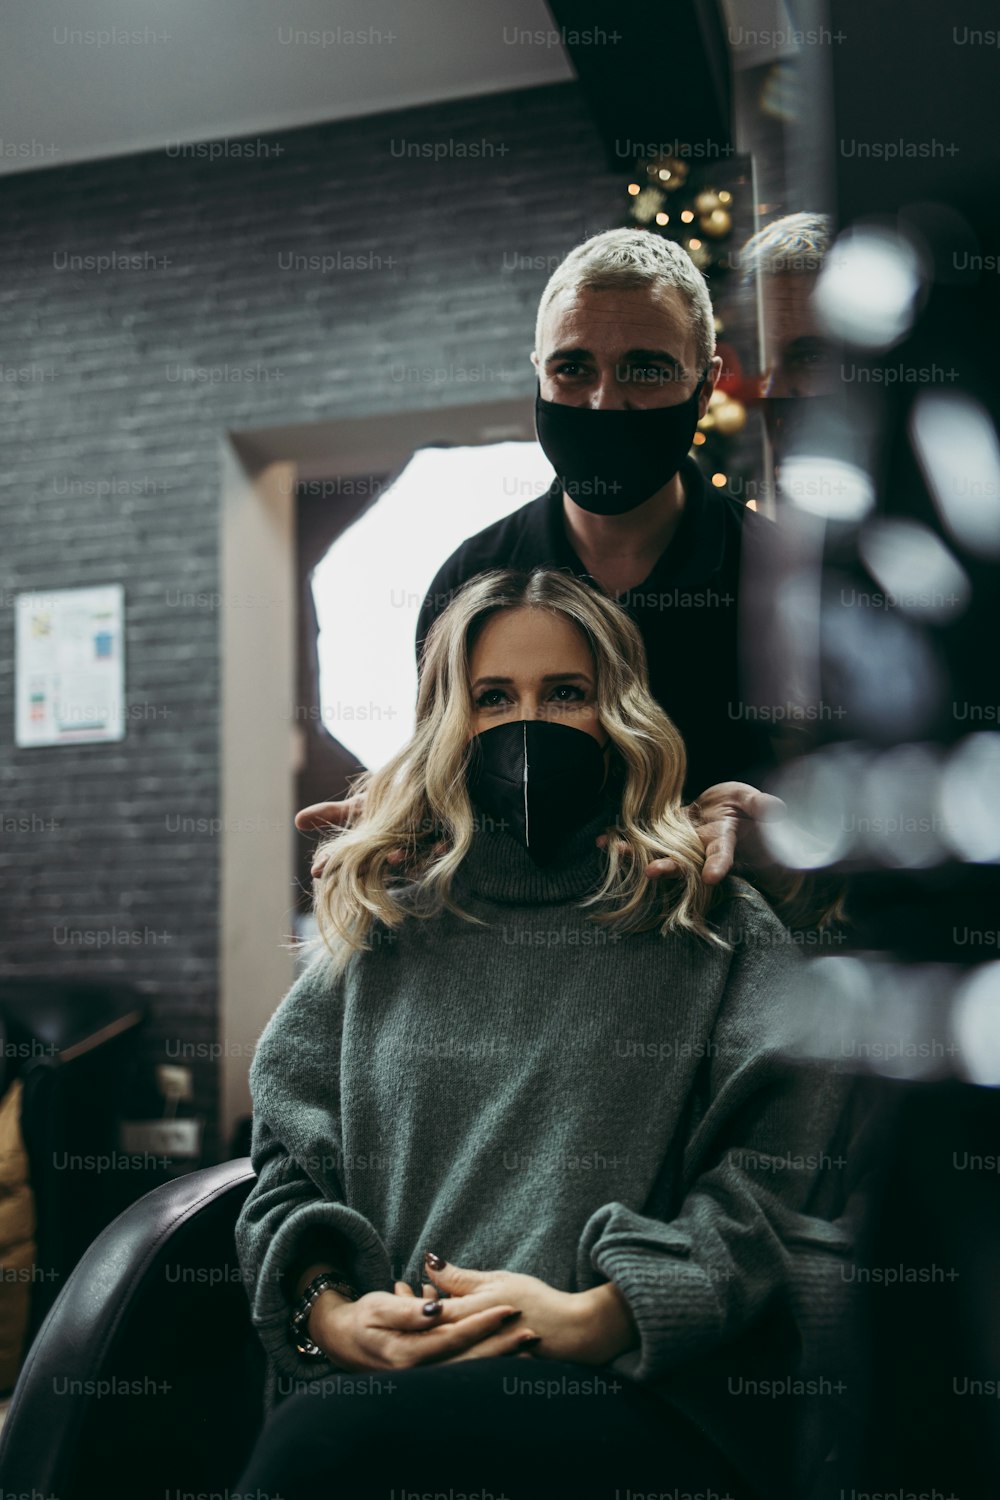 Schöne Frisur der Frau nach dem Färben der Haare und Highlights im Friseursalon. Sie trägt eine Gesichtsschutzmaske als Schutz vor einer Viruspandemie.